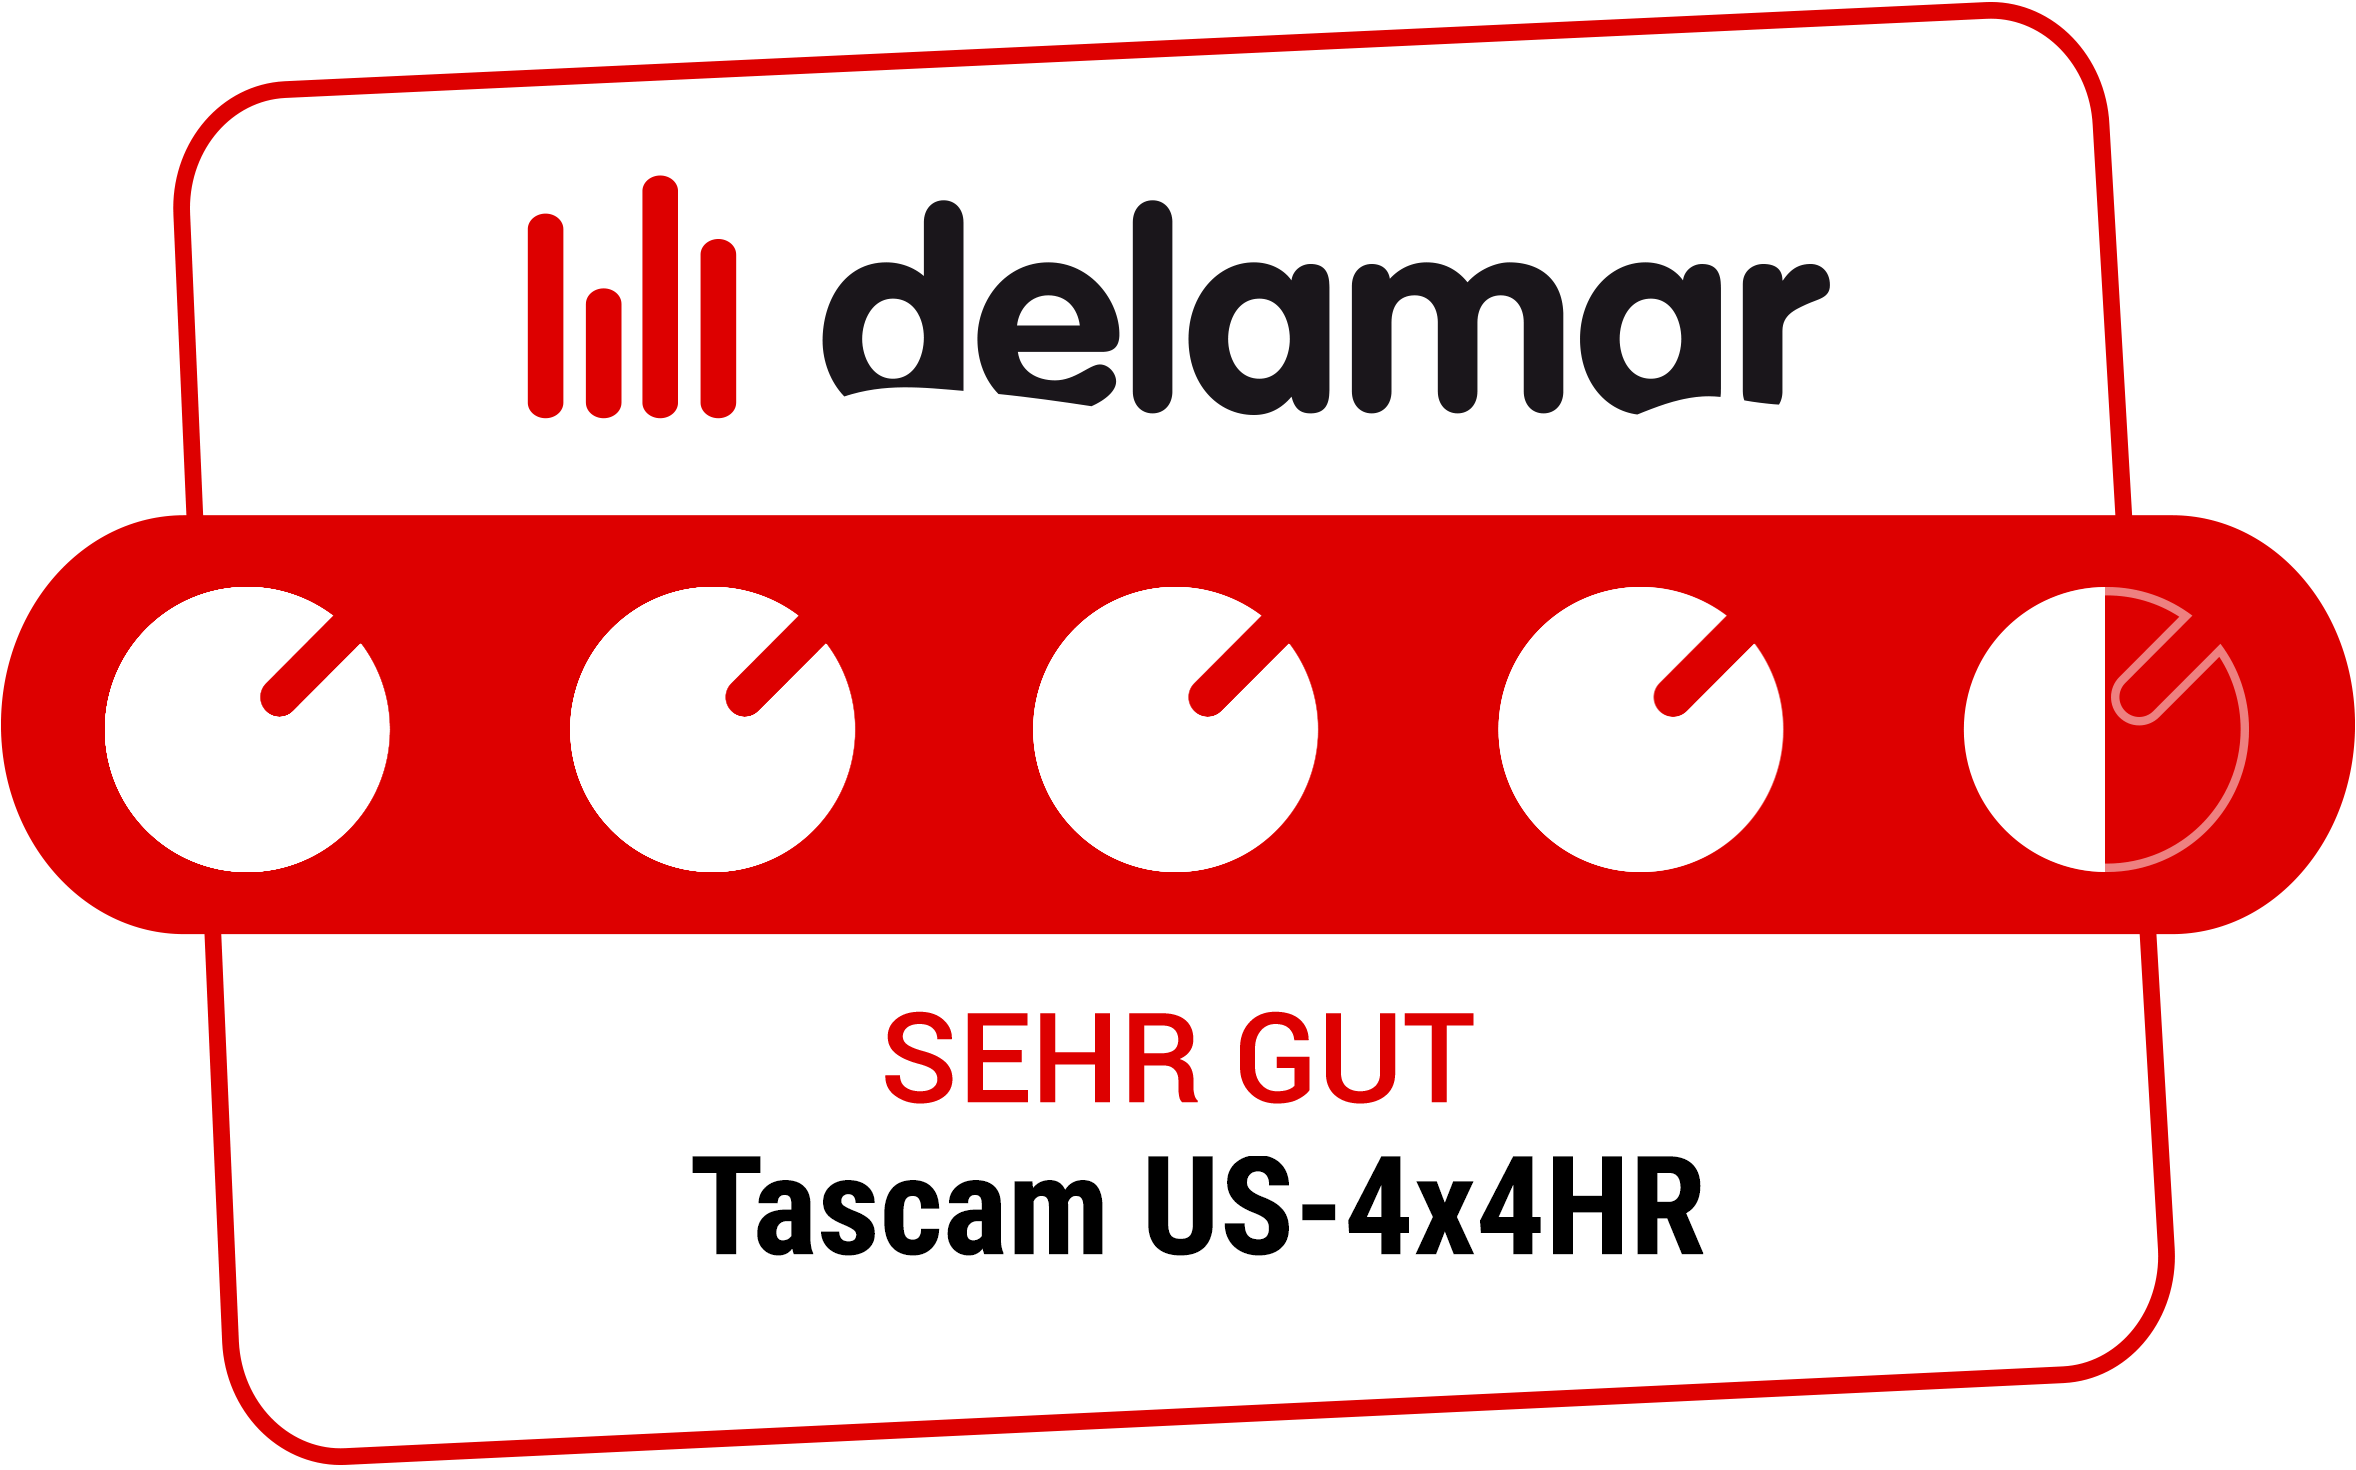 Delamar zeichnet das Tascam US-4x4HR mit dem Prädikat 'SEHR GUT' aus